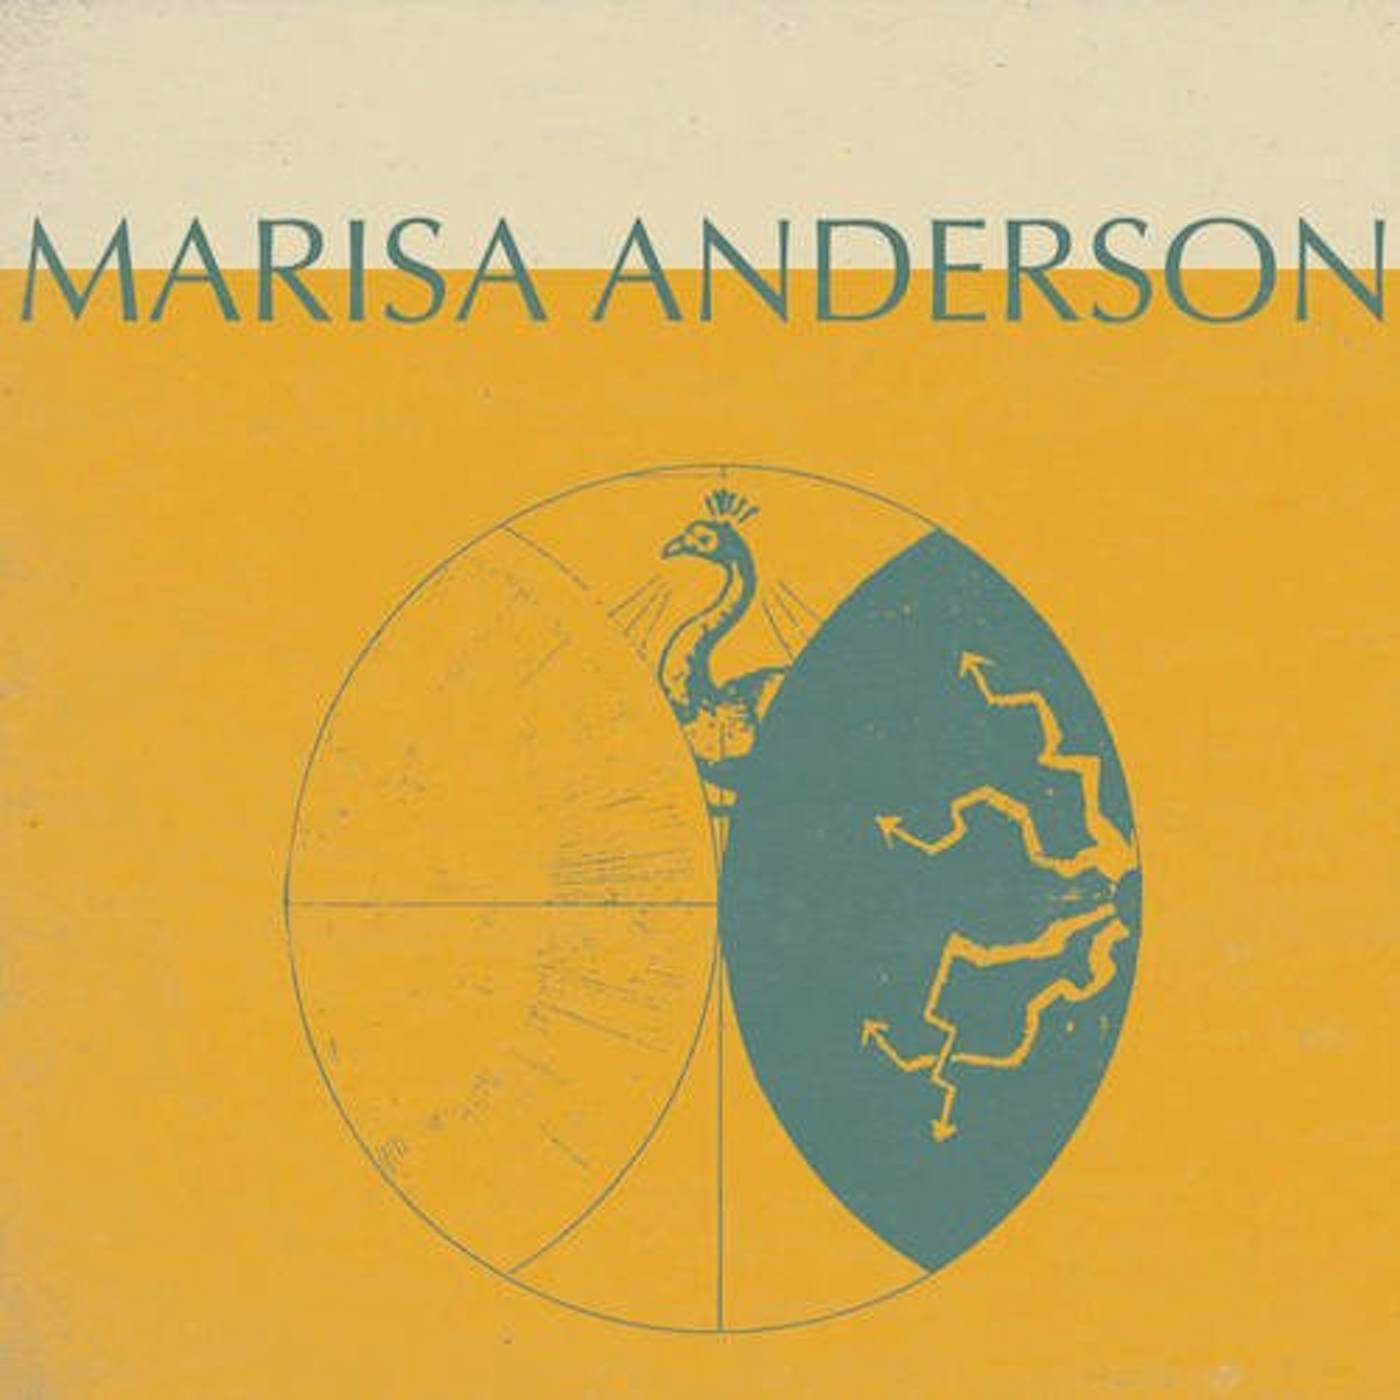 Marisa Anderson Mercury Vinyl Record